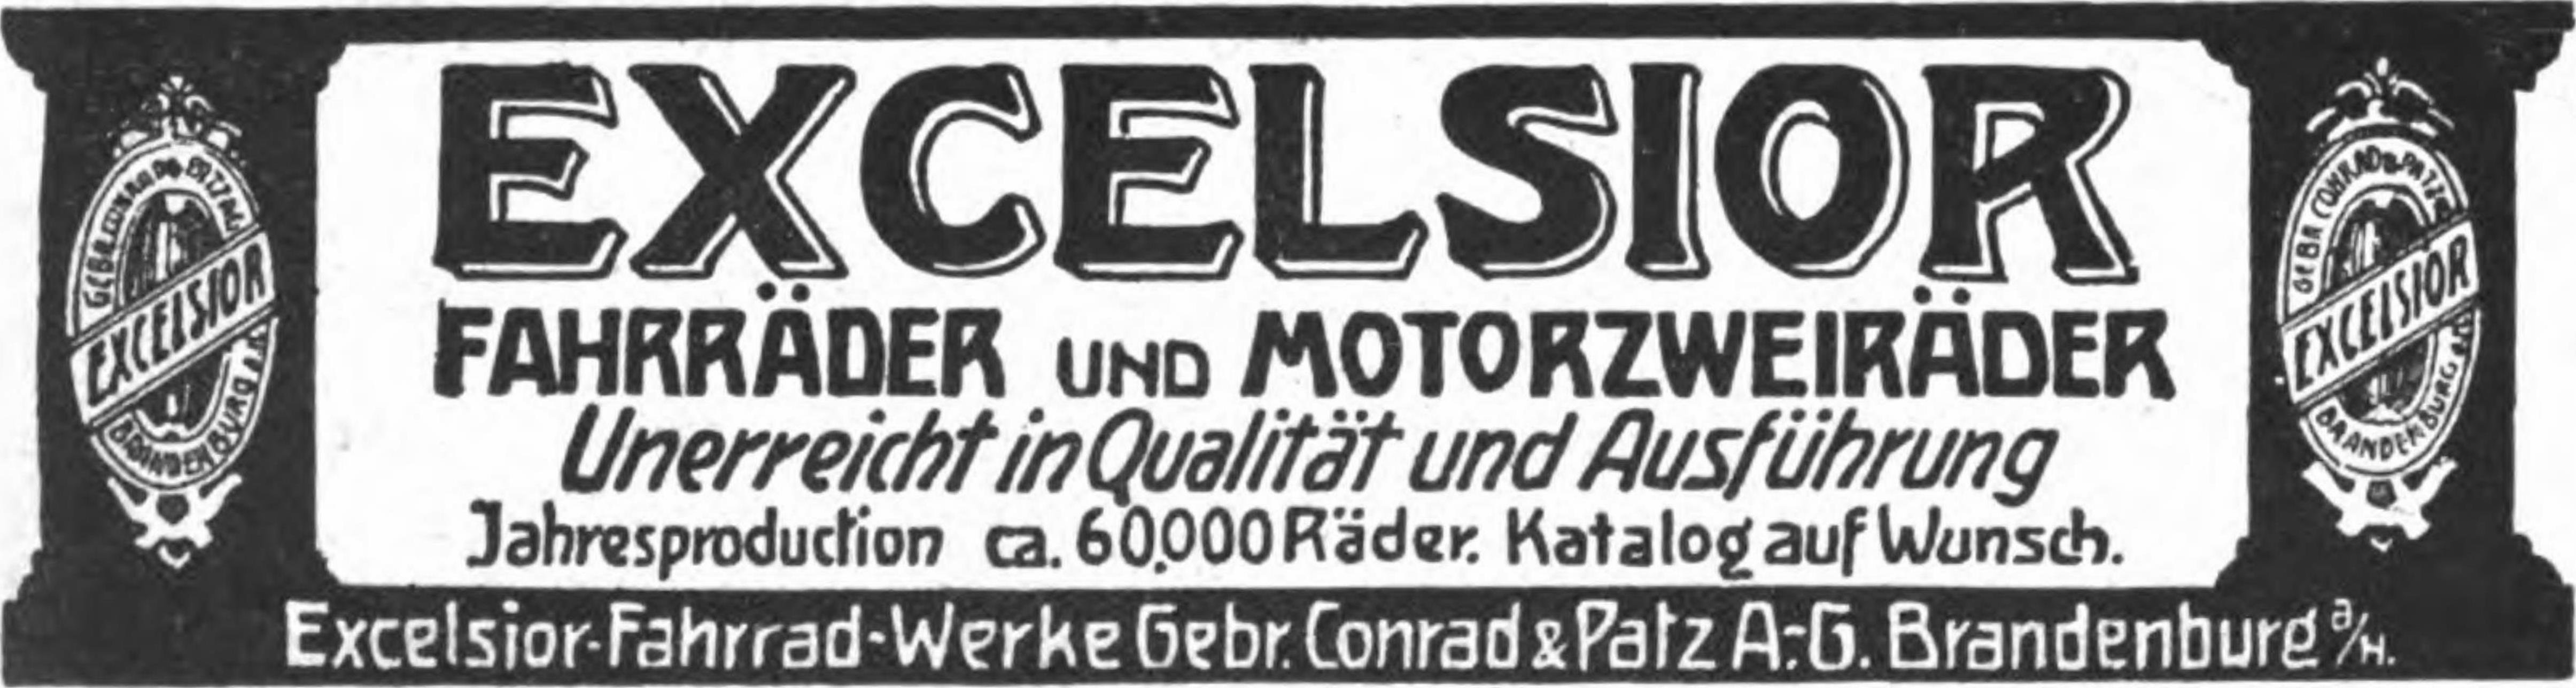 Excelsior 1908 303.jpg